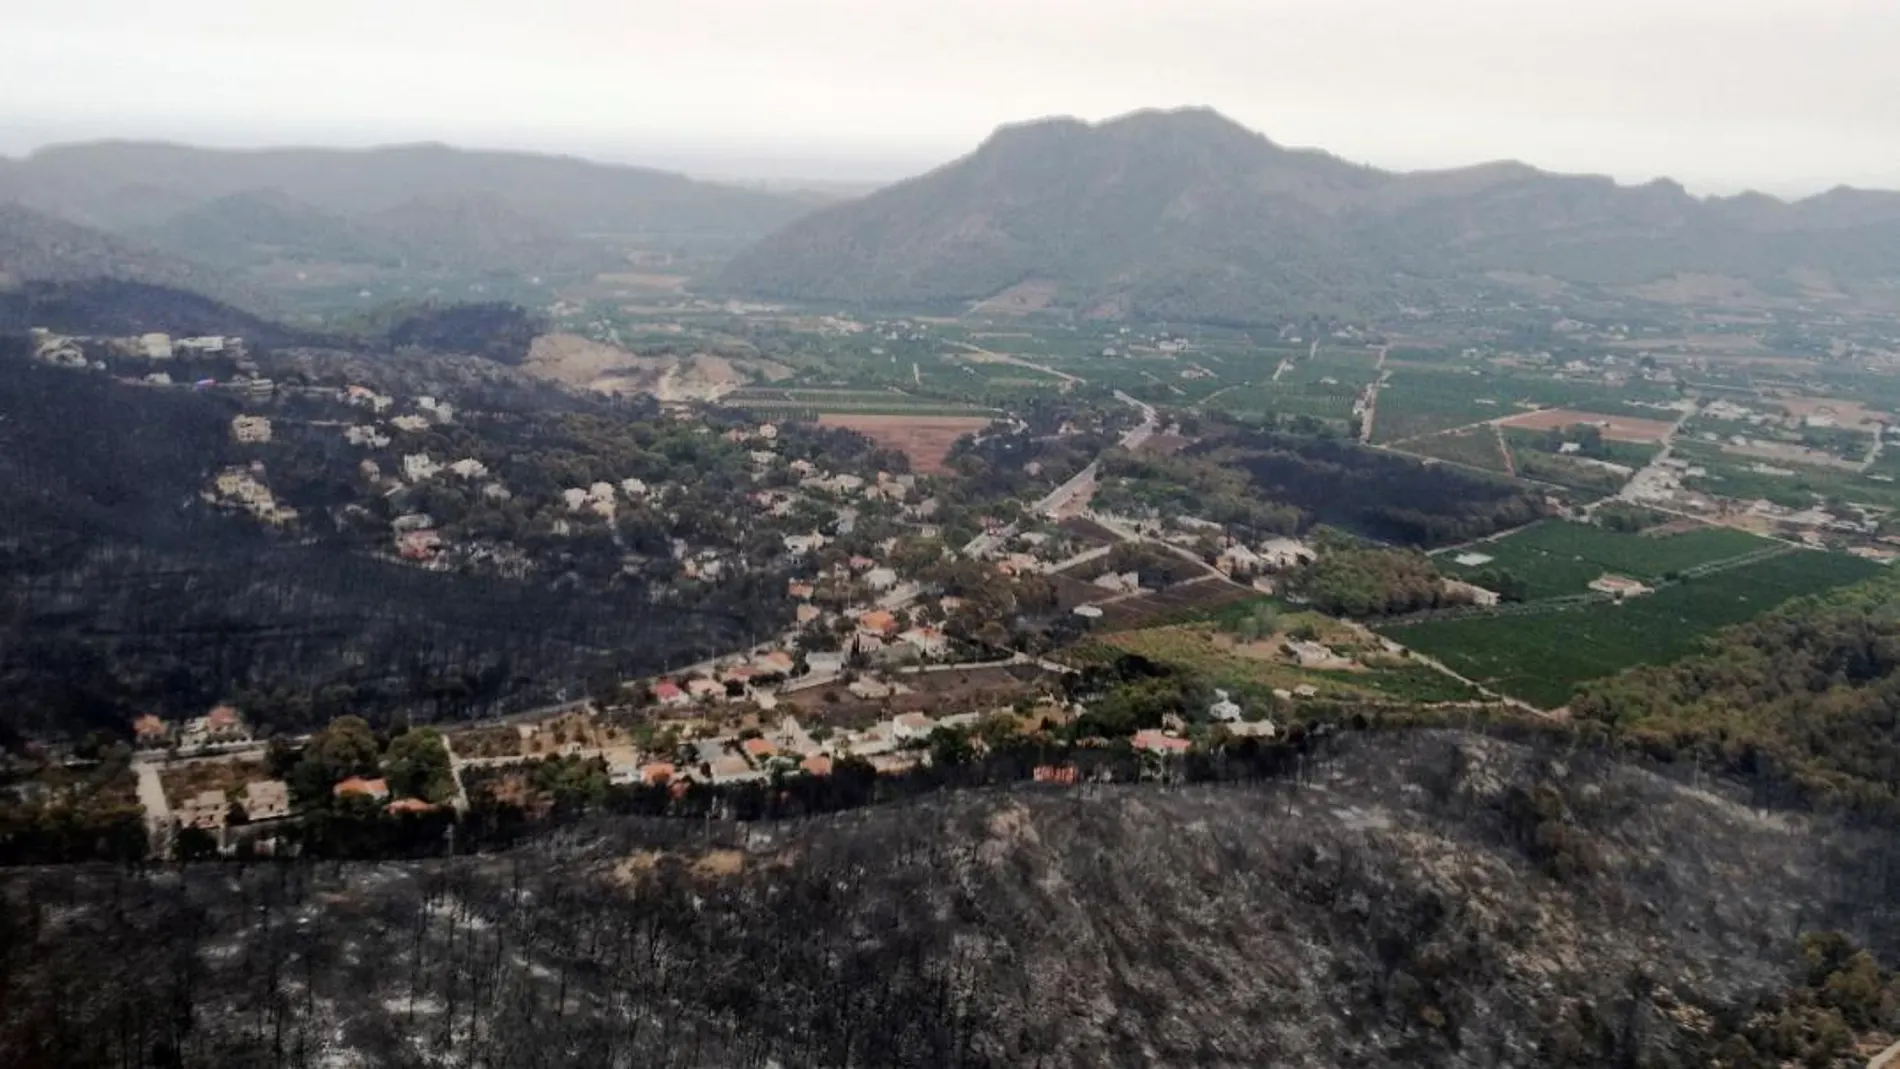 Fotografía facilitada por la Unidad Militar de Emergencias (UME), vista aérea de la zona afectada por el incendio en Llutxent (EFE)